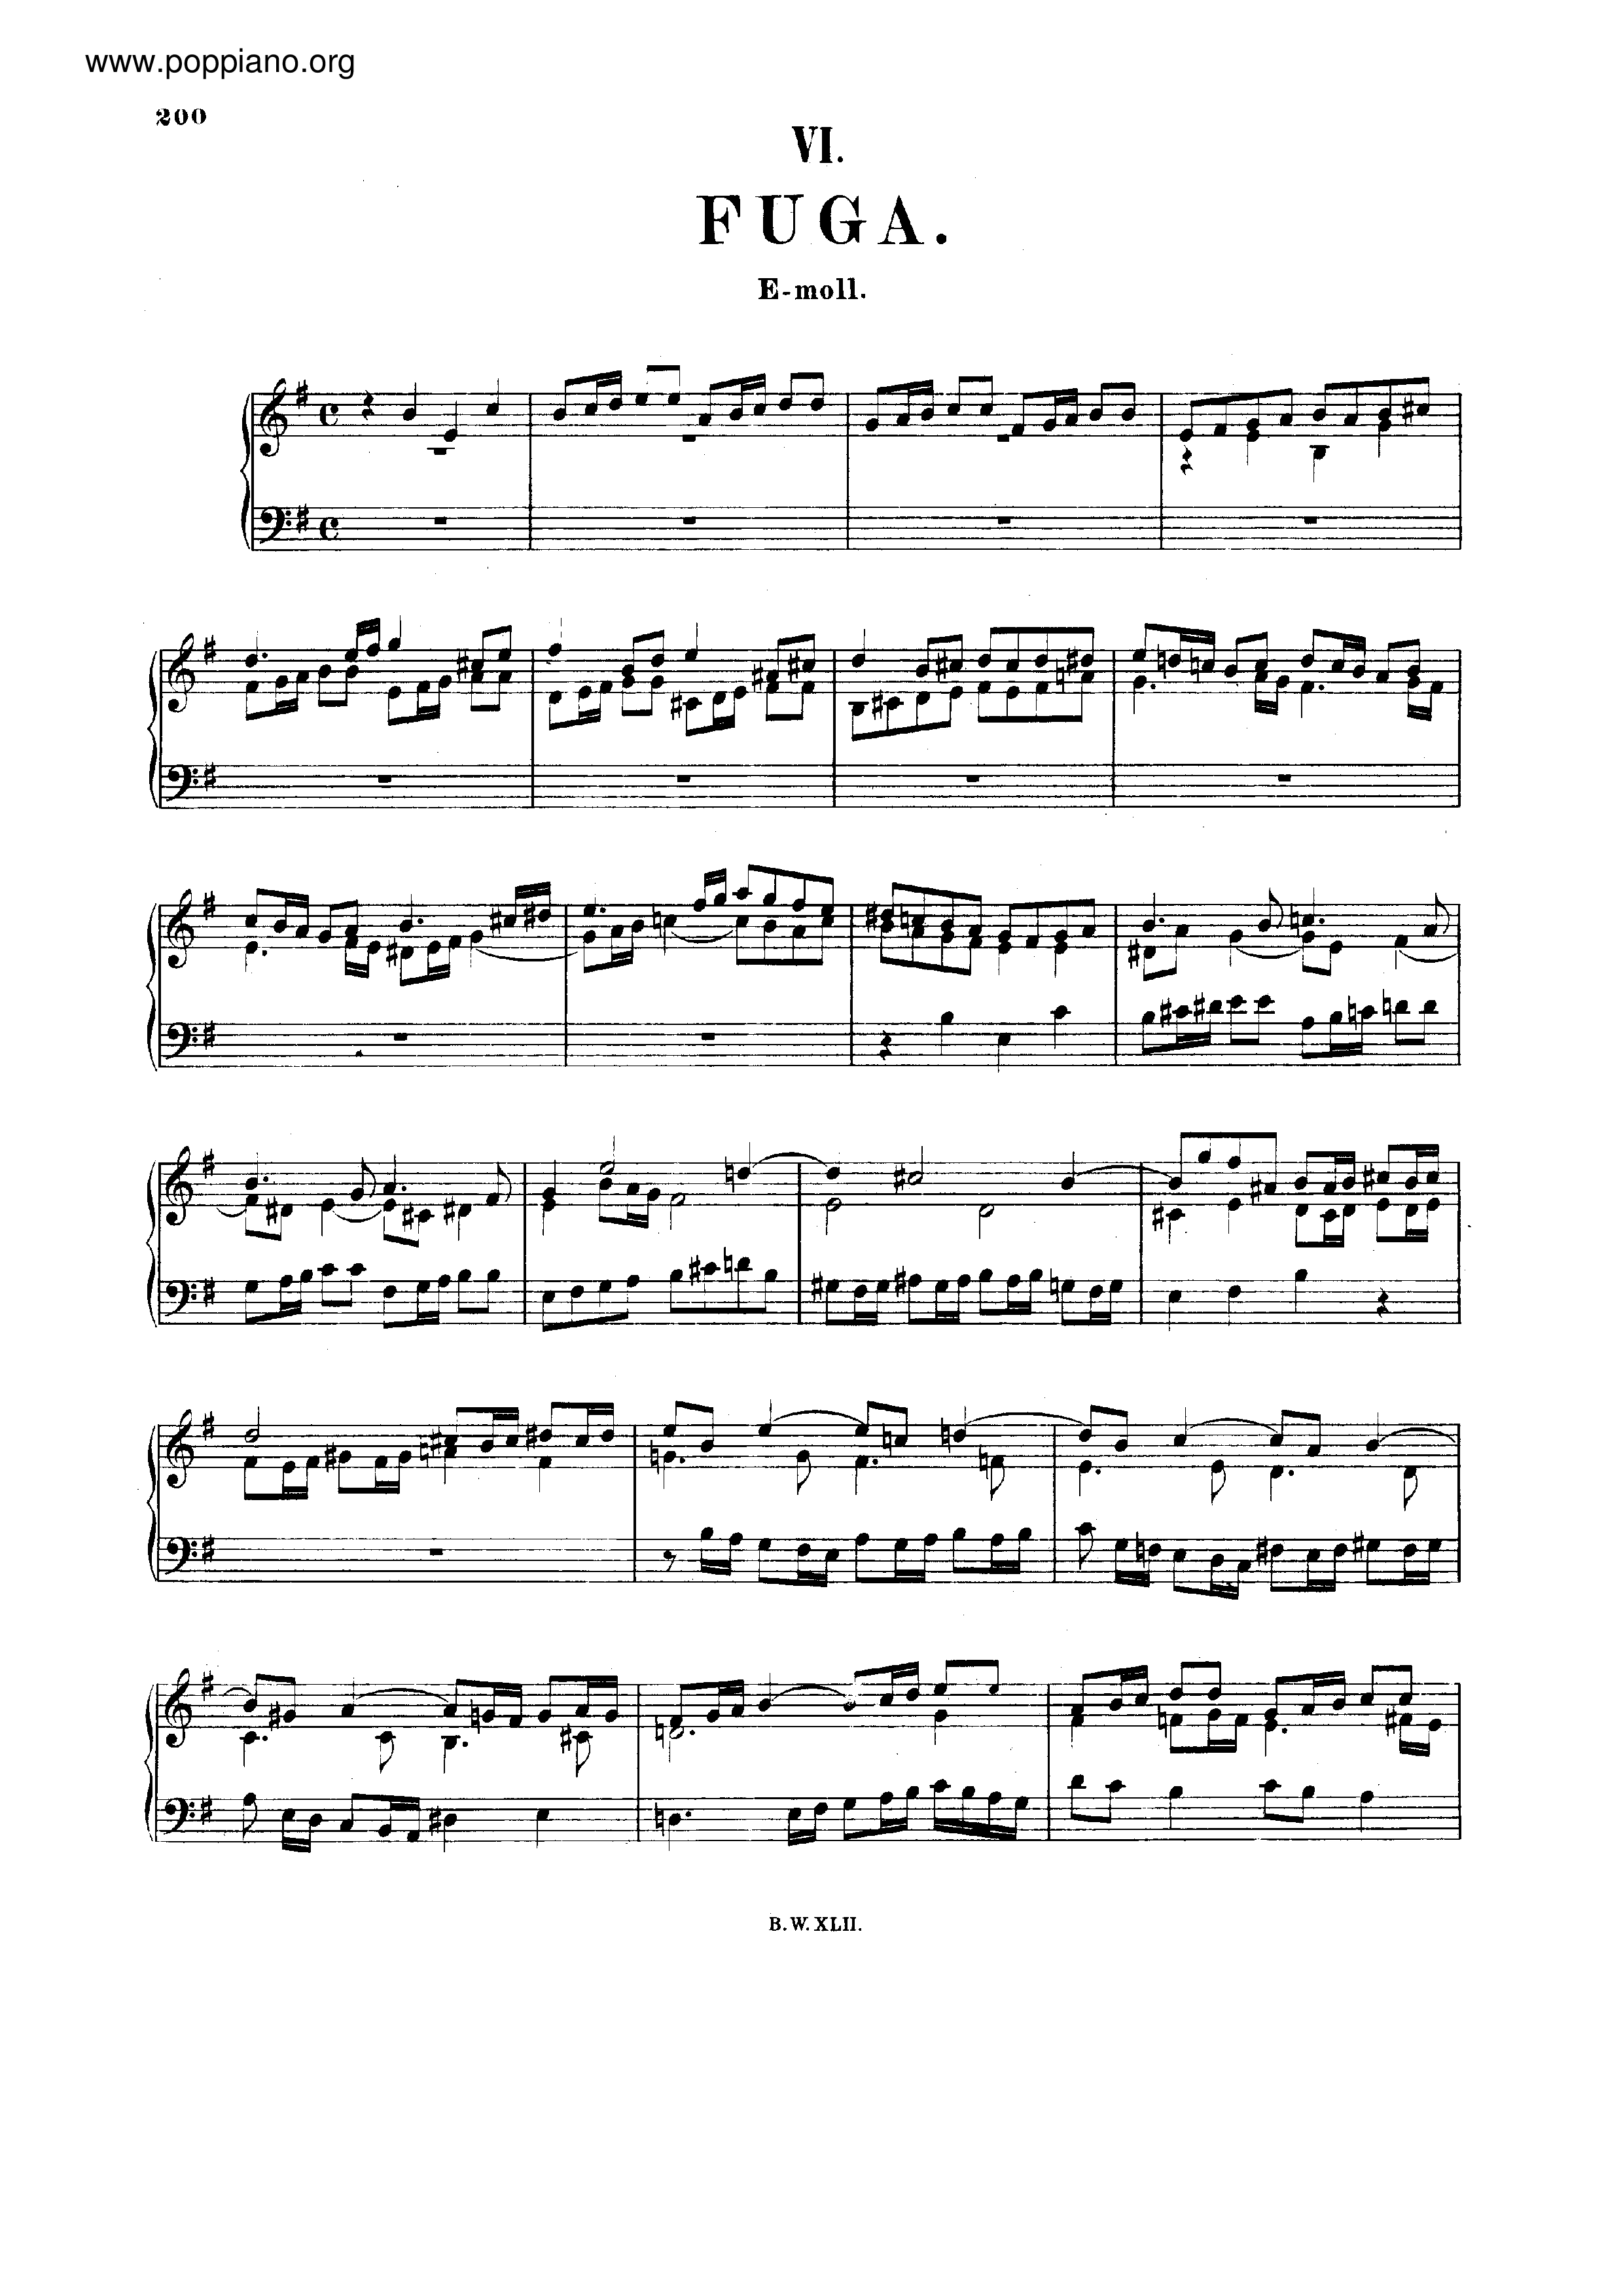 Fugue in e minor, BWV 956 Score